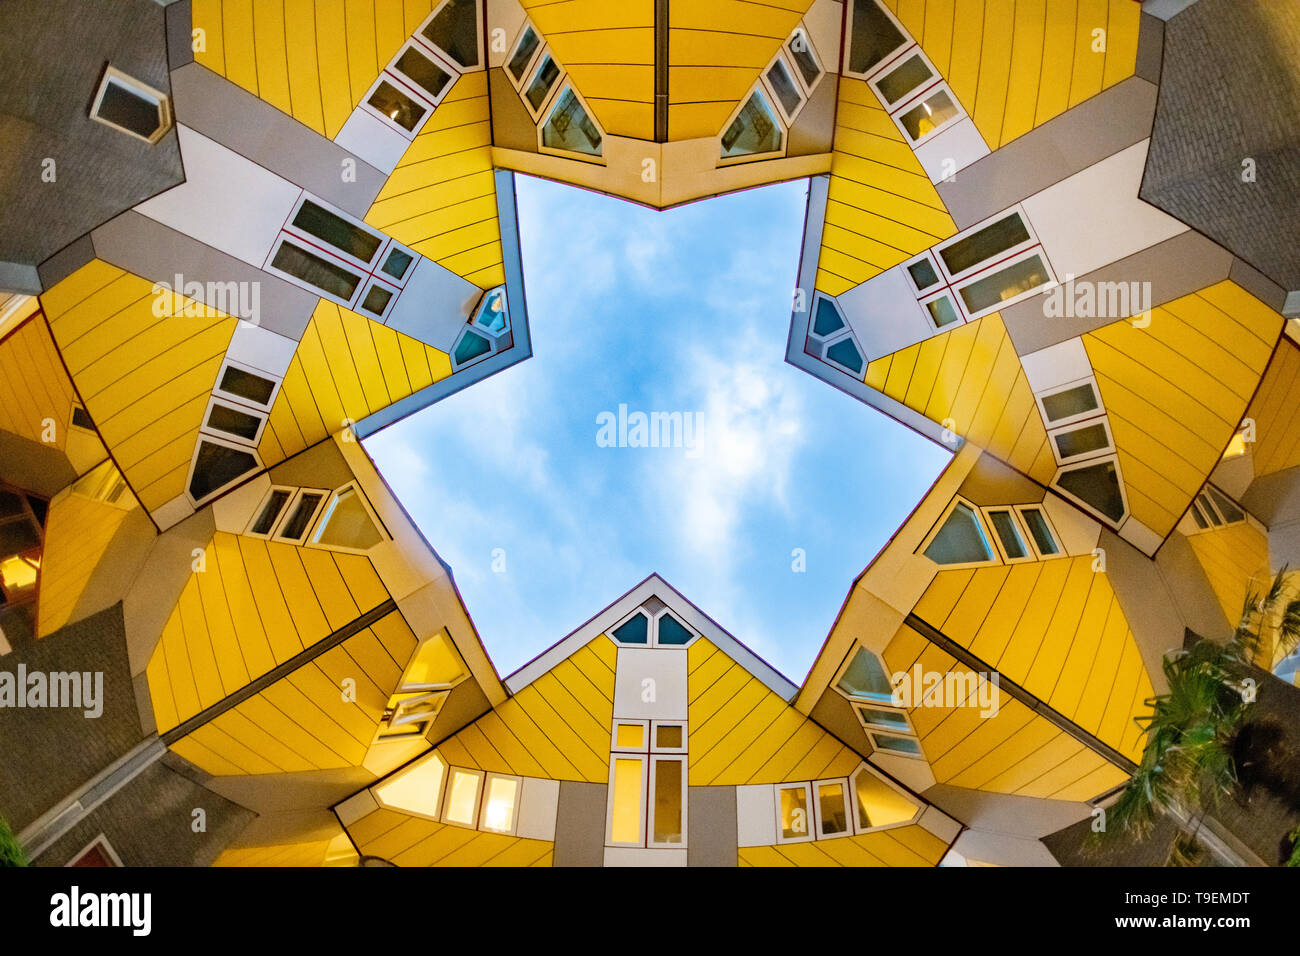 Case cubo di Rotterdam - Piet Blom architetto - Architettura moderna - Fotografia astratta - Abstract - foto - turismo olandese Paesi Bassi turismo Foto Stock